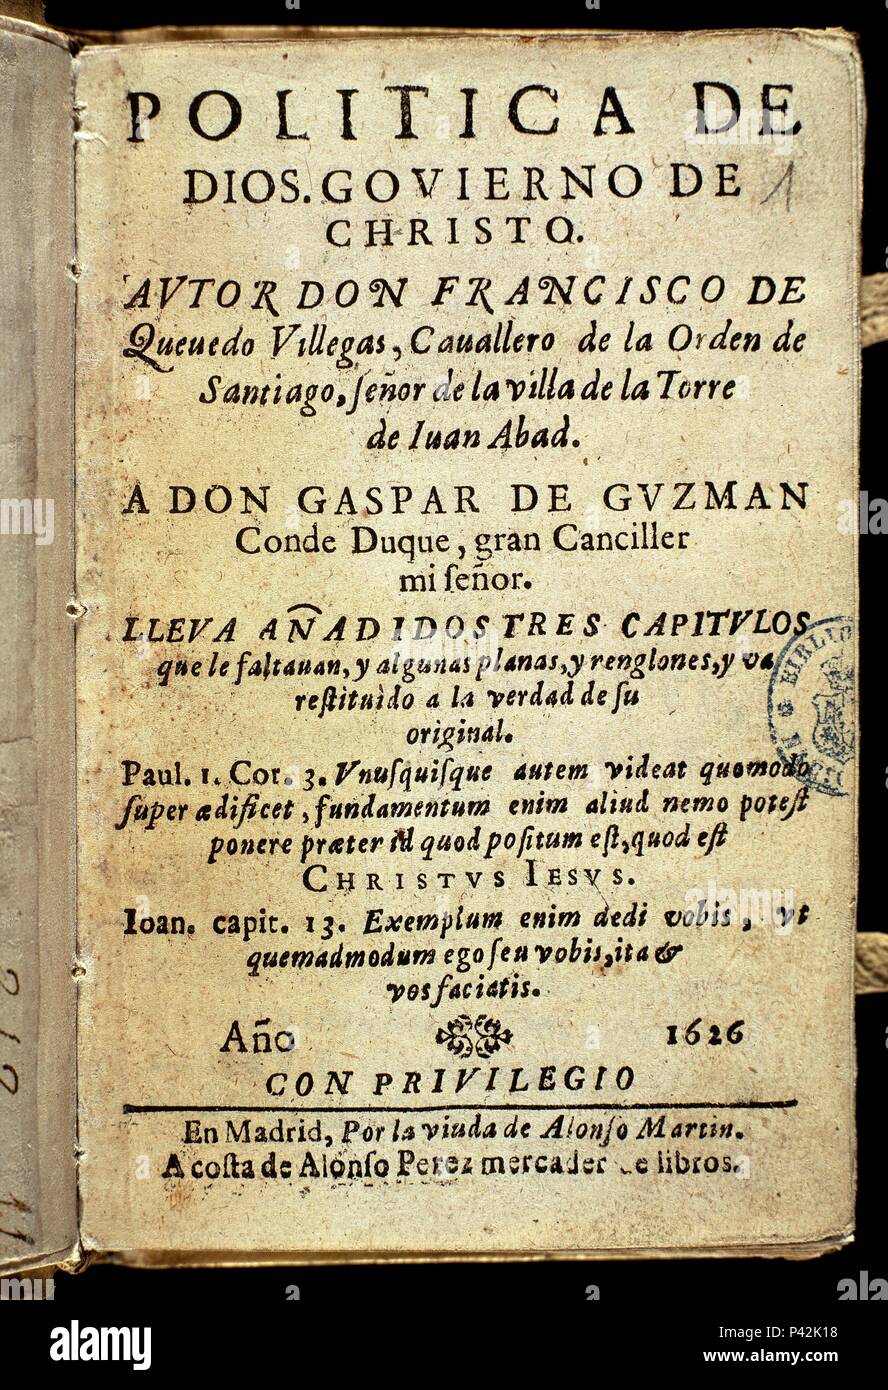 PORTADA DE POLITICA DE  DE  A  DE   1626. Author: Francisco de Quevedo (1580-1645). Location:  BIBLIOTECA NACIONAL-COLECCION, MADRID, SPAIN Stock Photo - Alamy